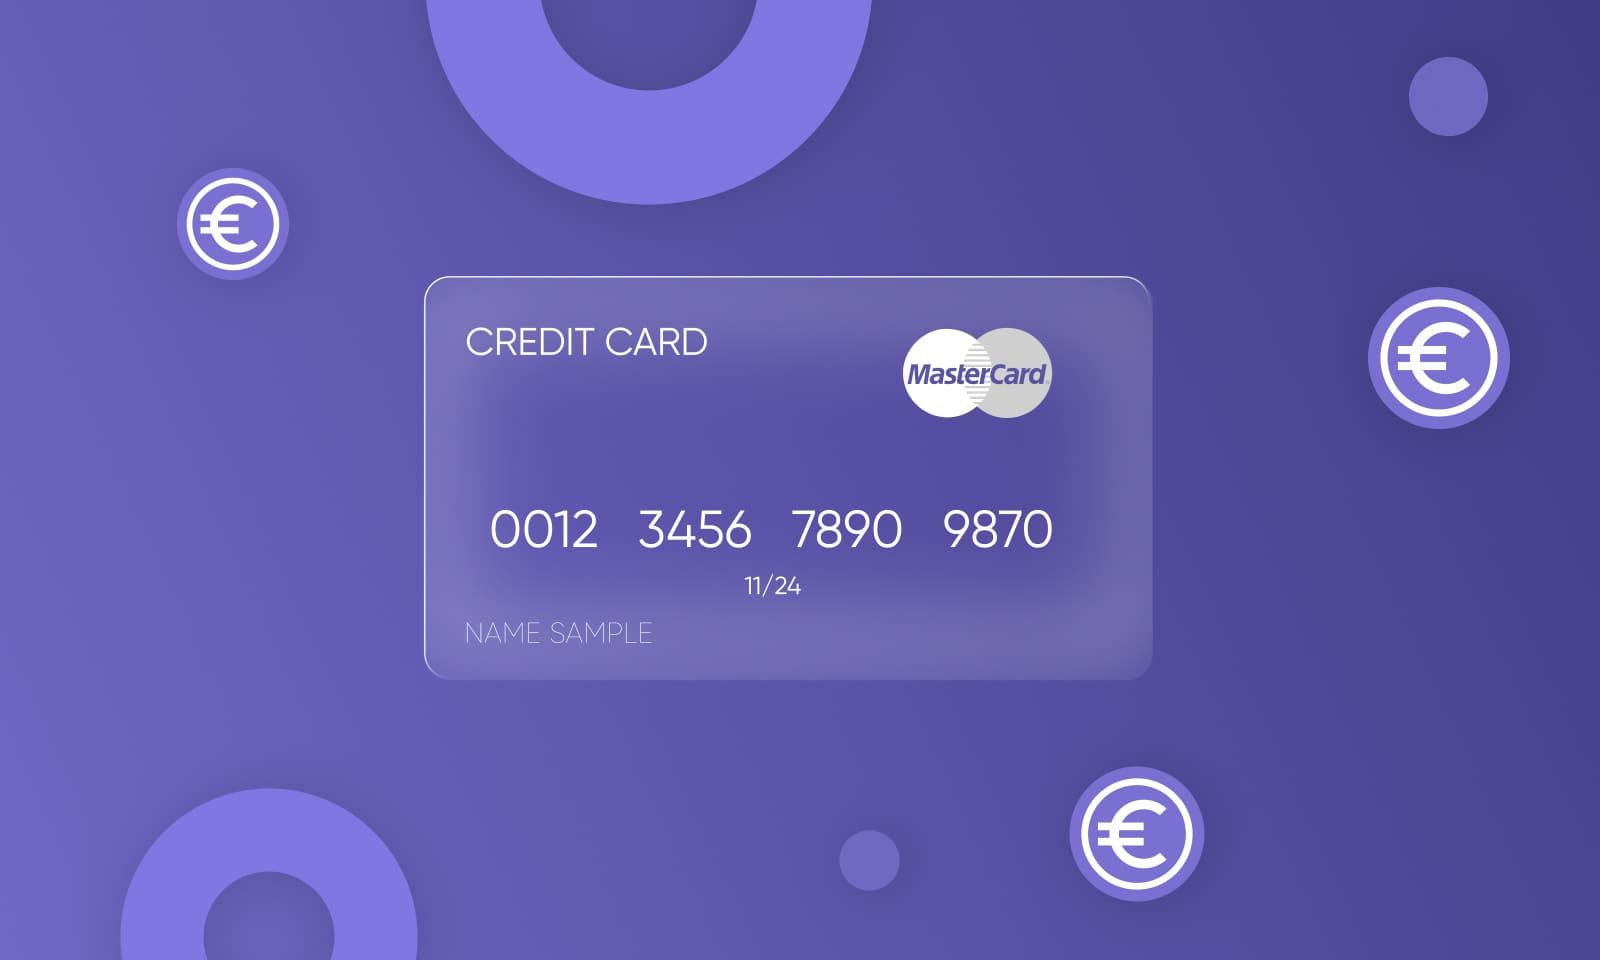 Платежная система MasterCard предусмотрела выпуск карт для всех категорий граждан и юридических лиц